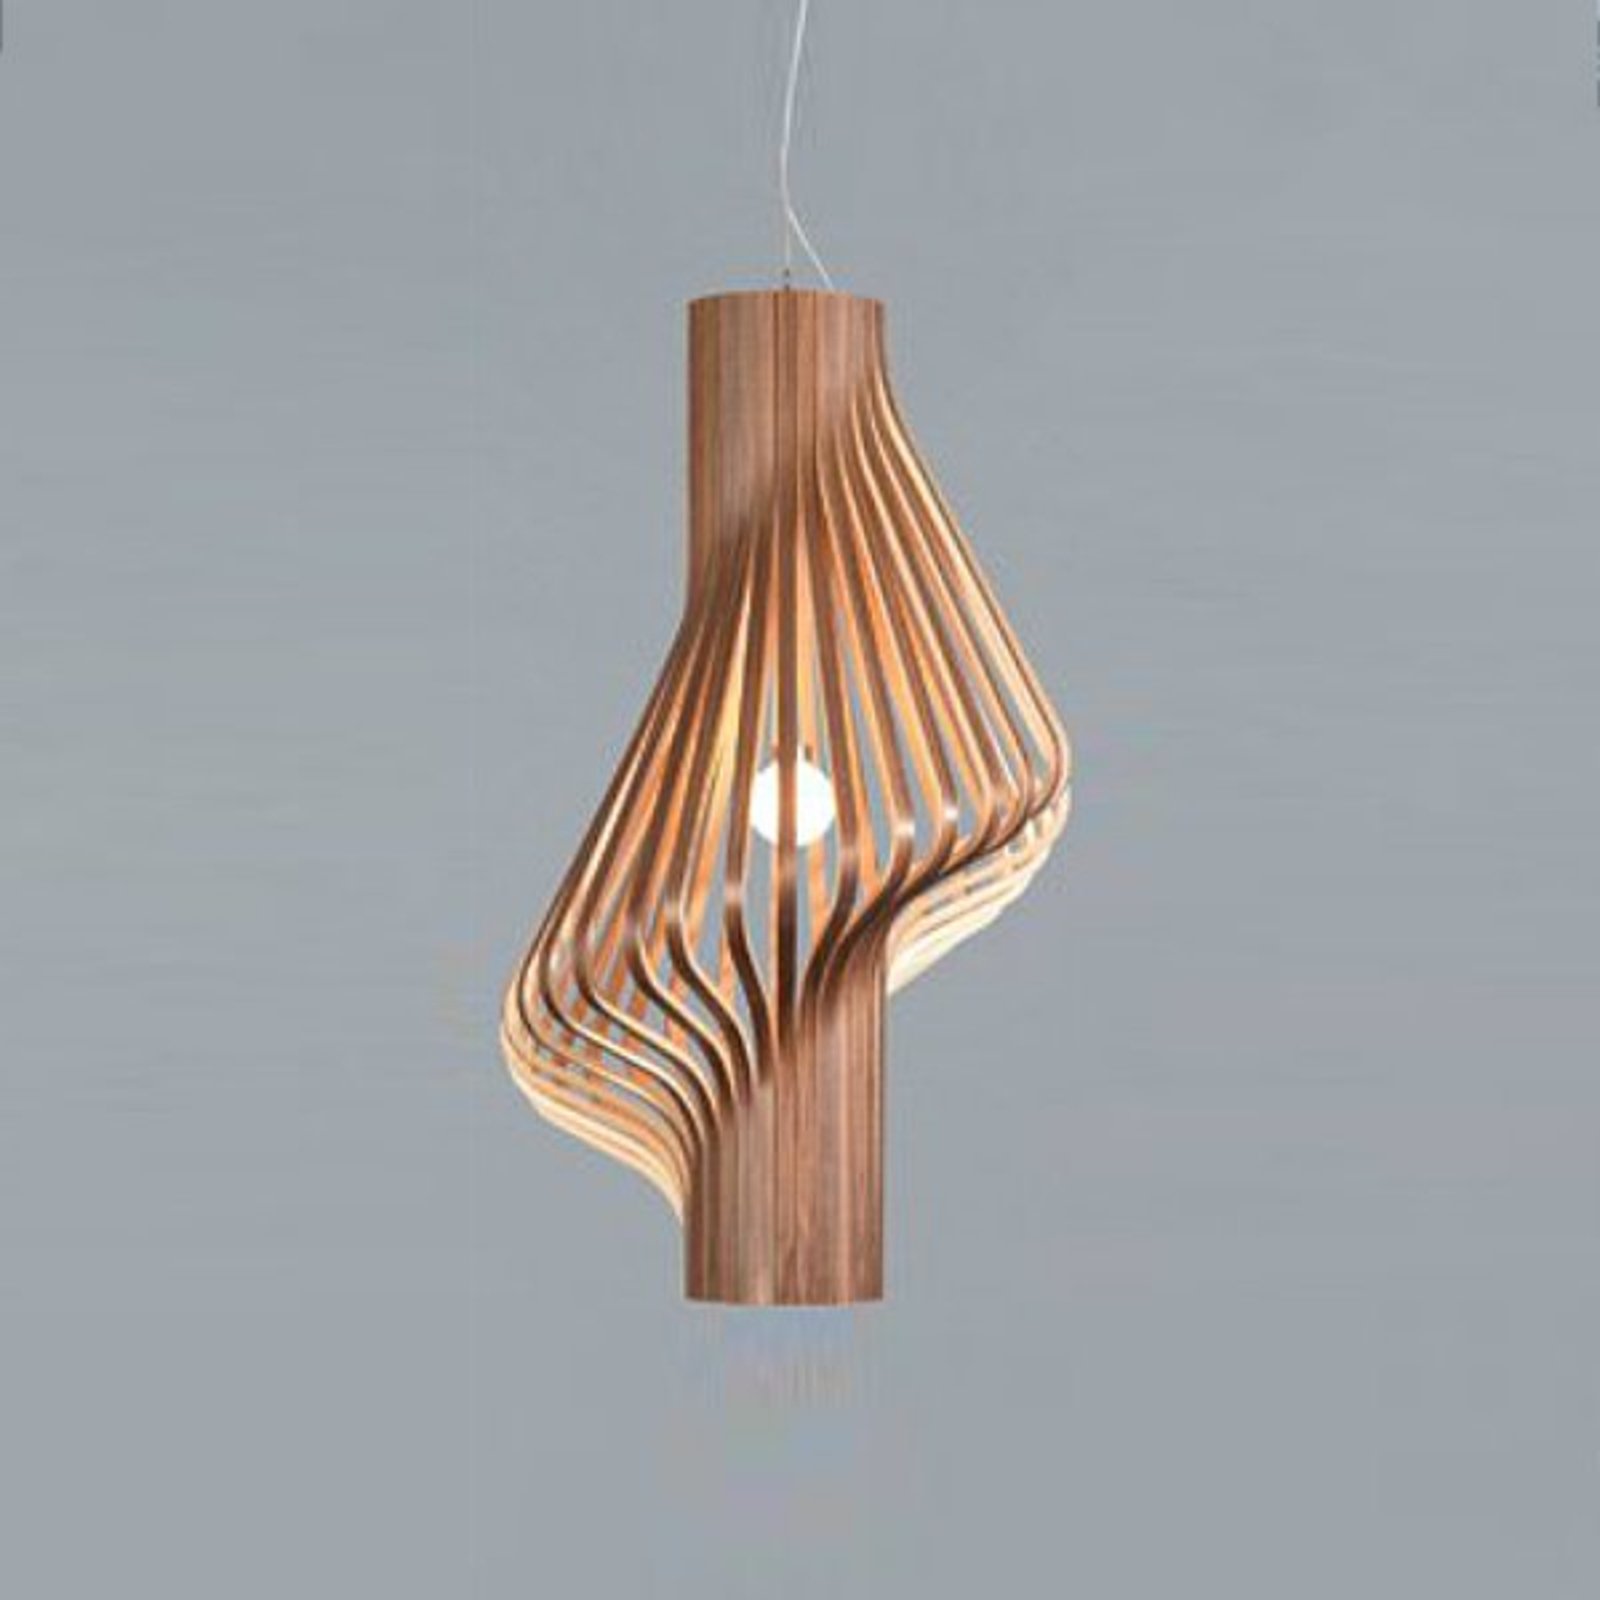 Mooie design hanglamp Diva walnoot